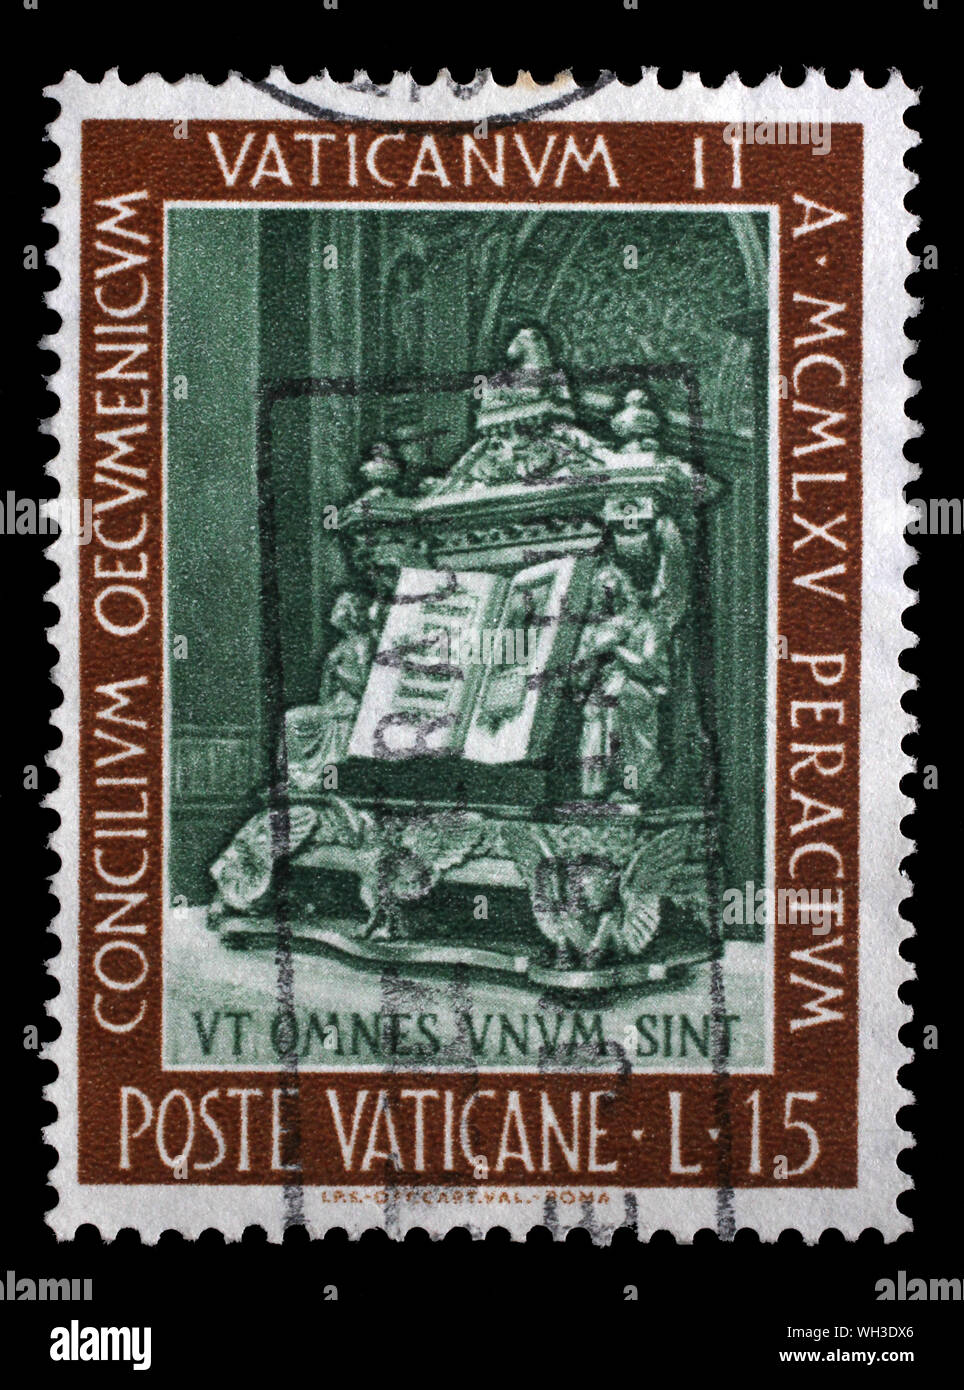 Stempel im Vatikan ausgestellt zeigt Evangelium, Schließung des Ökumenischen Rates, circa 1966. Stockfoto